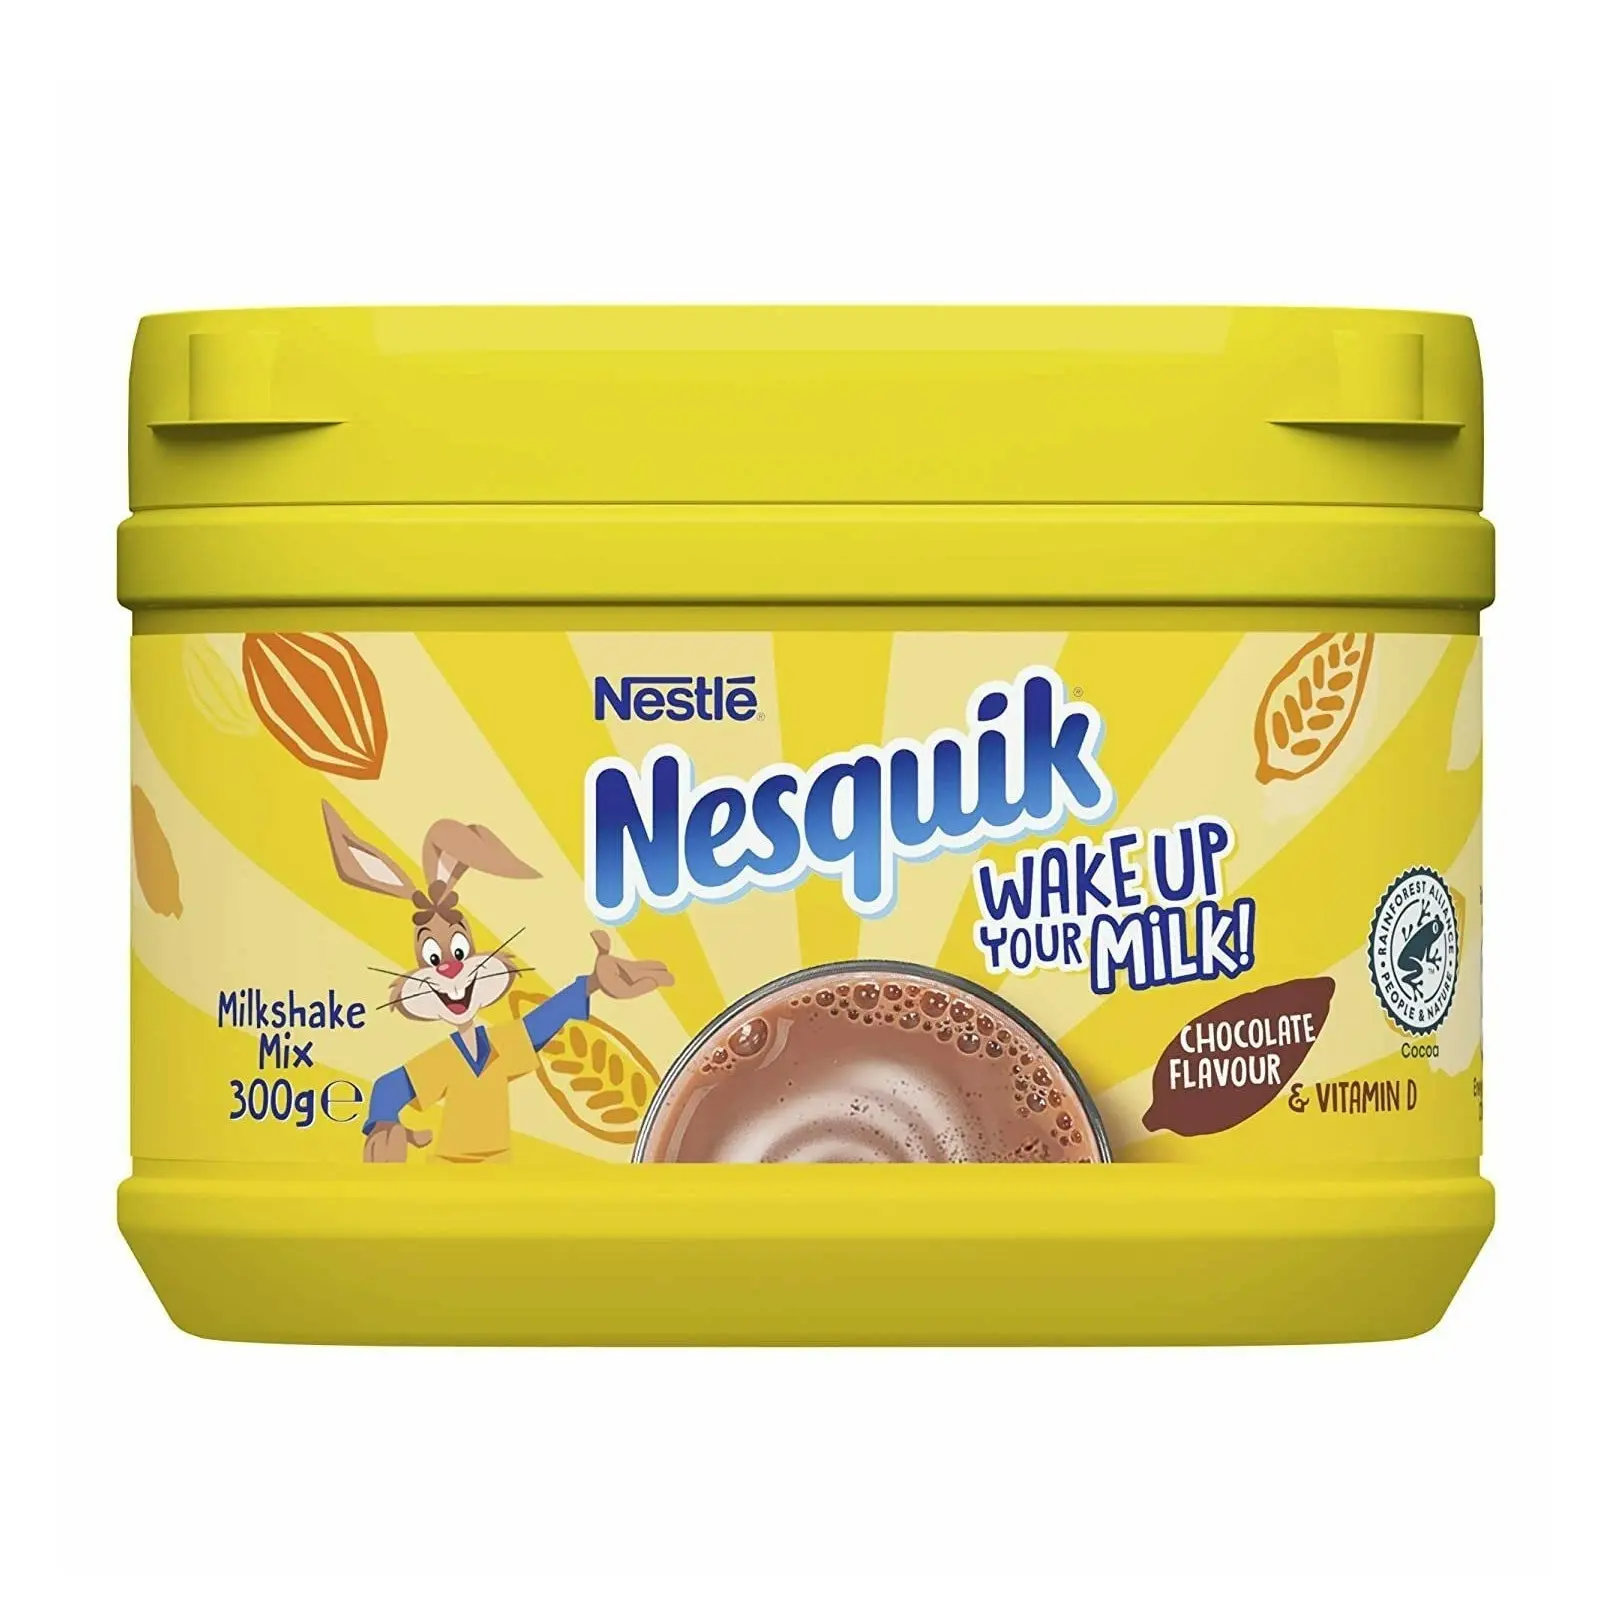 Compre/Encomende Chocolate Instantâneo em Pó de Qualidade Superior Online | Nestlé Nesquik Com Melhor Qualidade e Melhor Preço Exportações da Alemanha